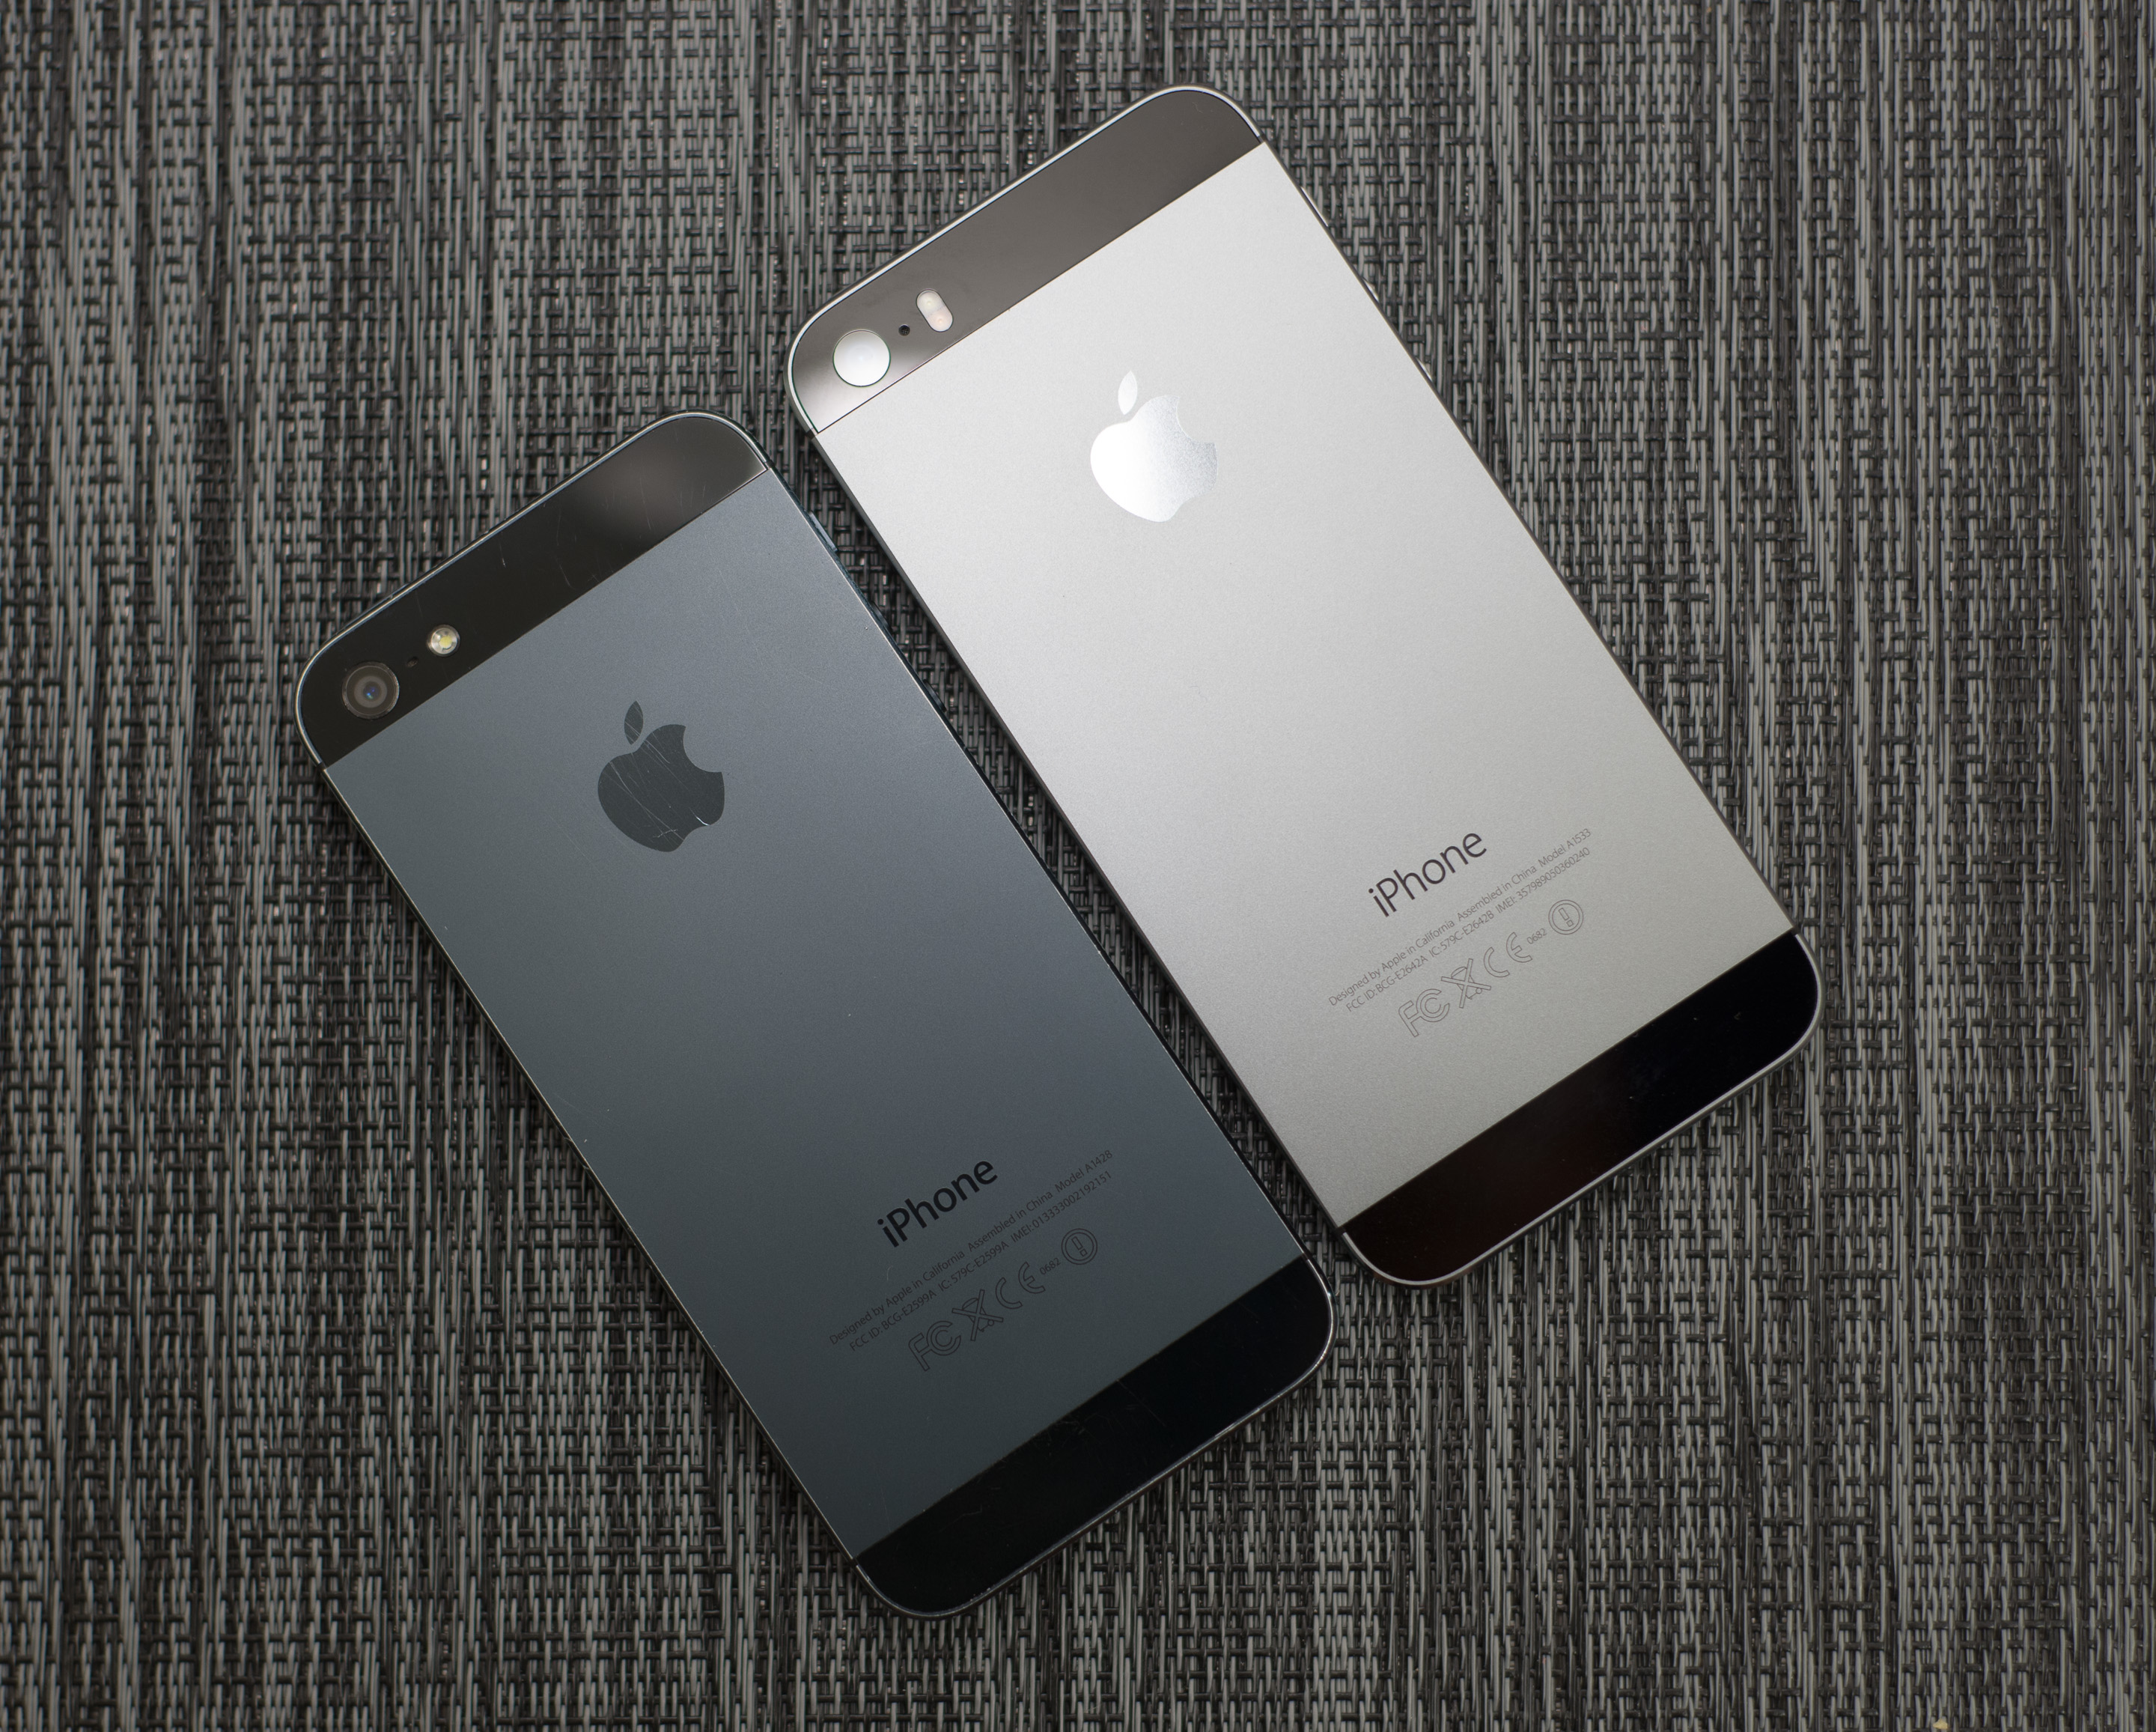 外媒anandtech的iPhone5s硬件评测已出 - 业界